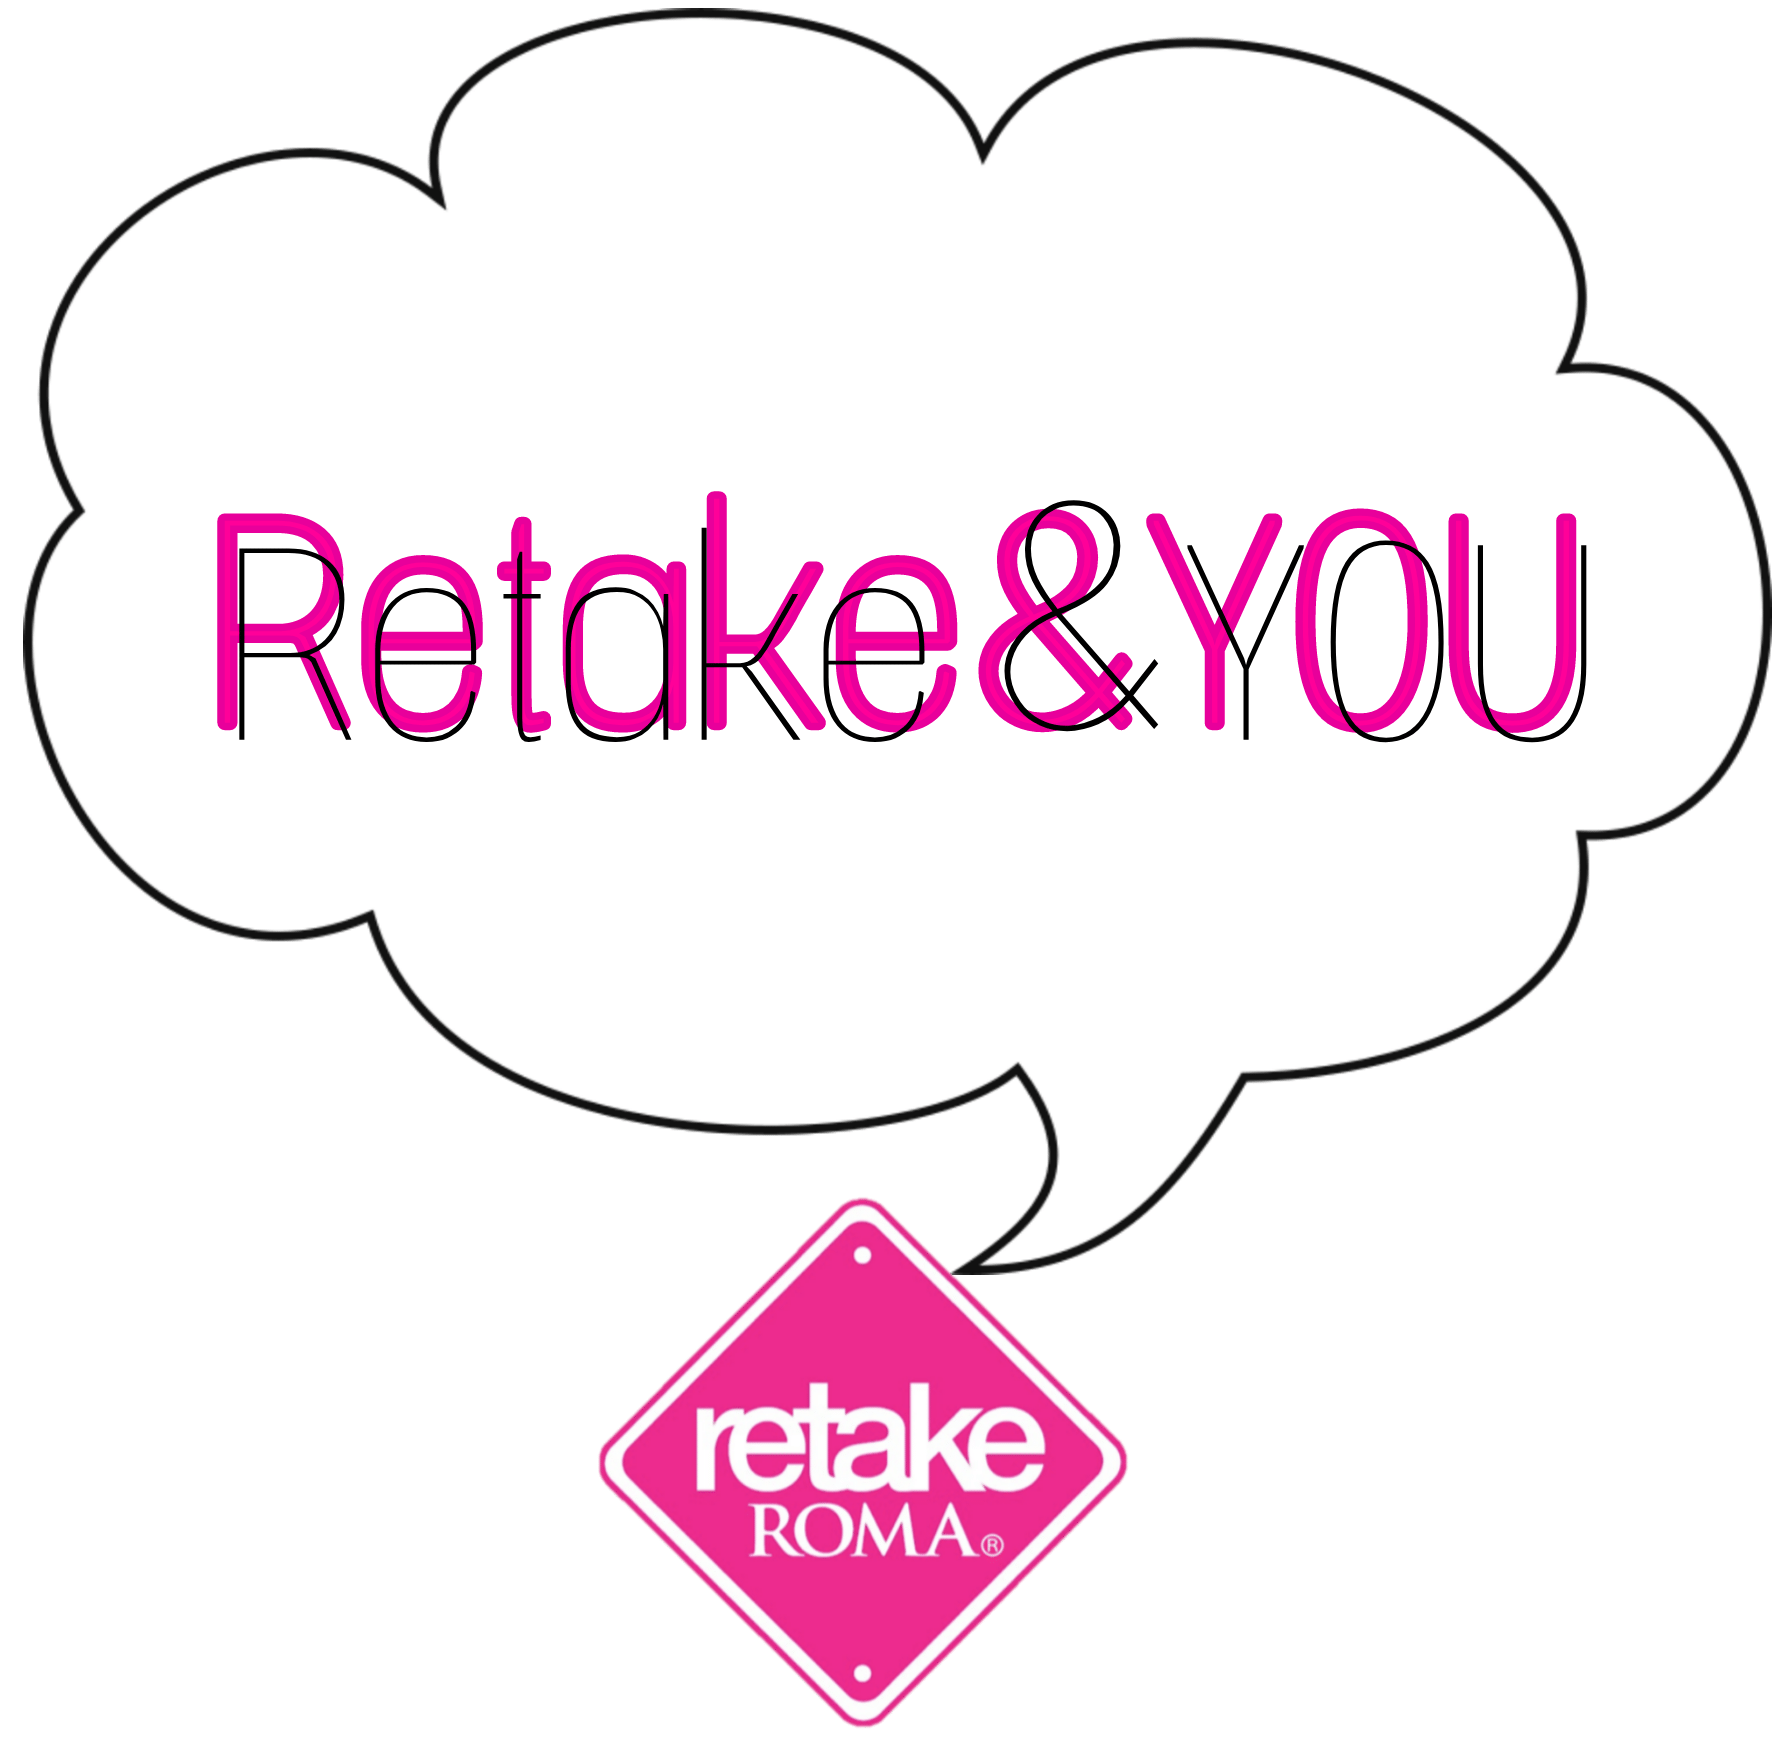 Retake&You